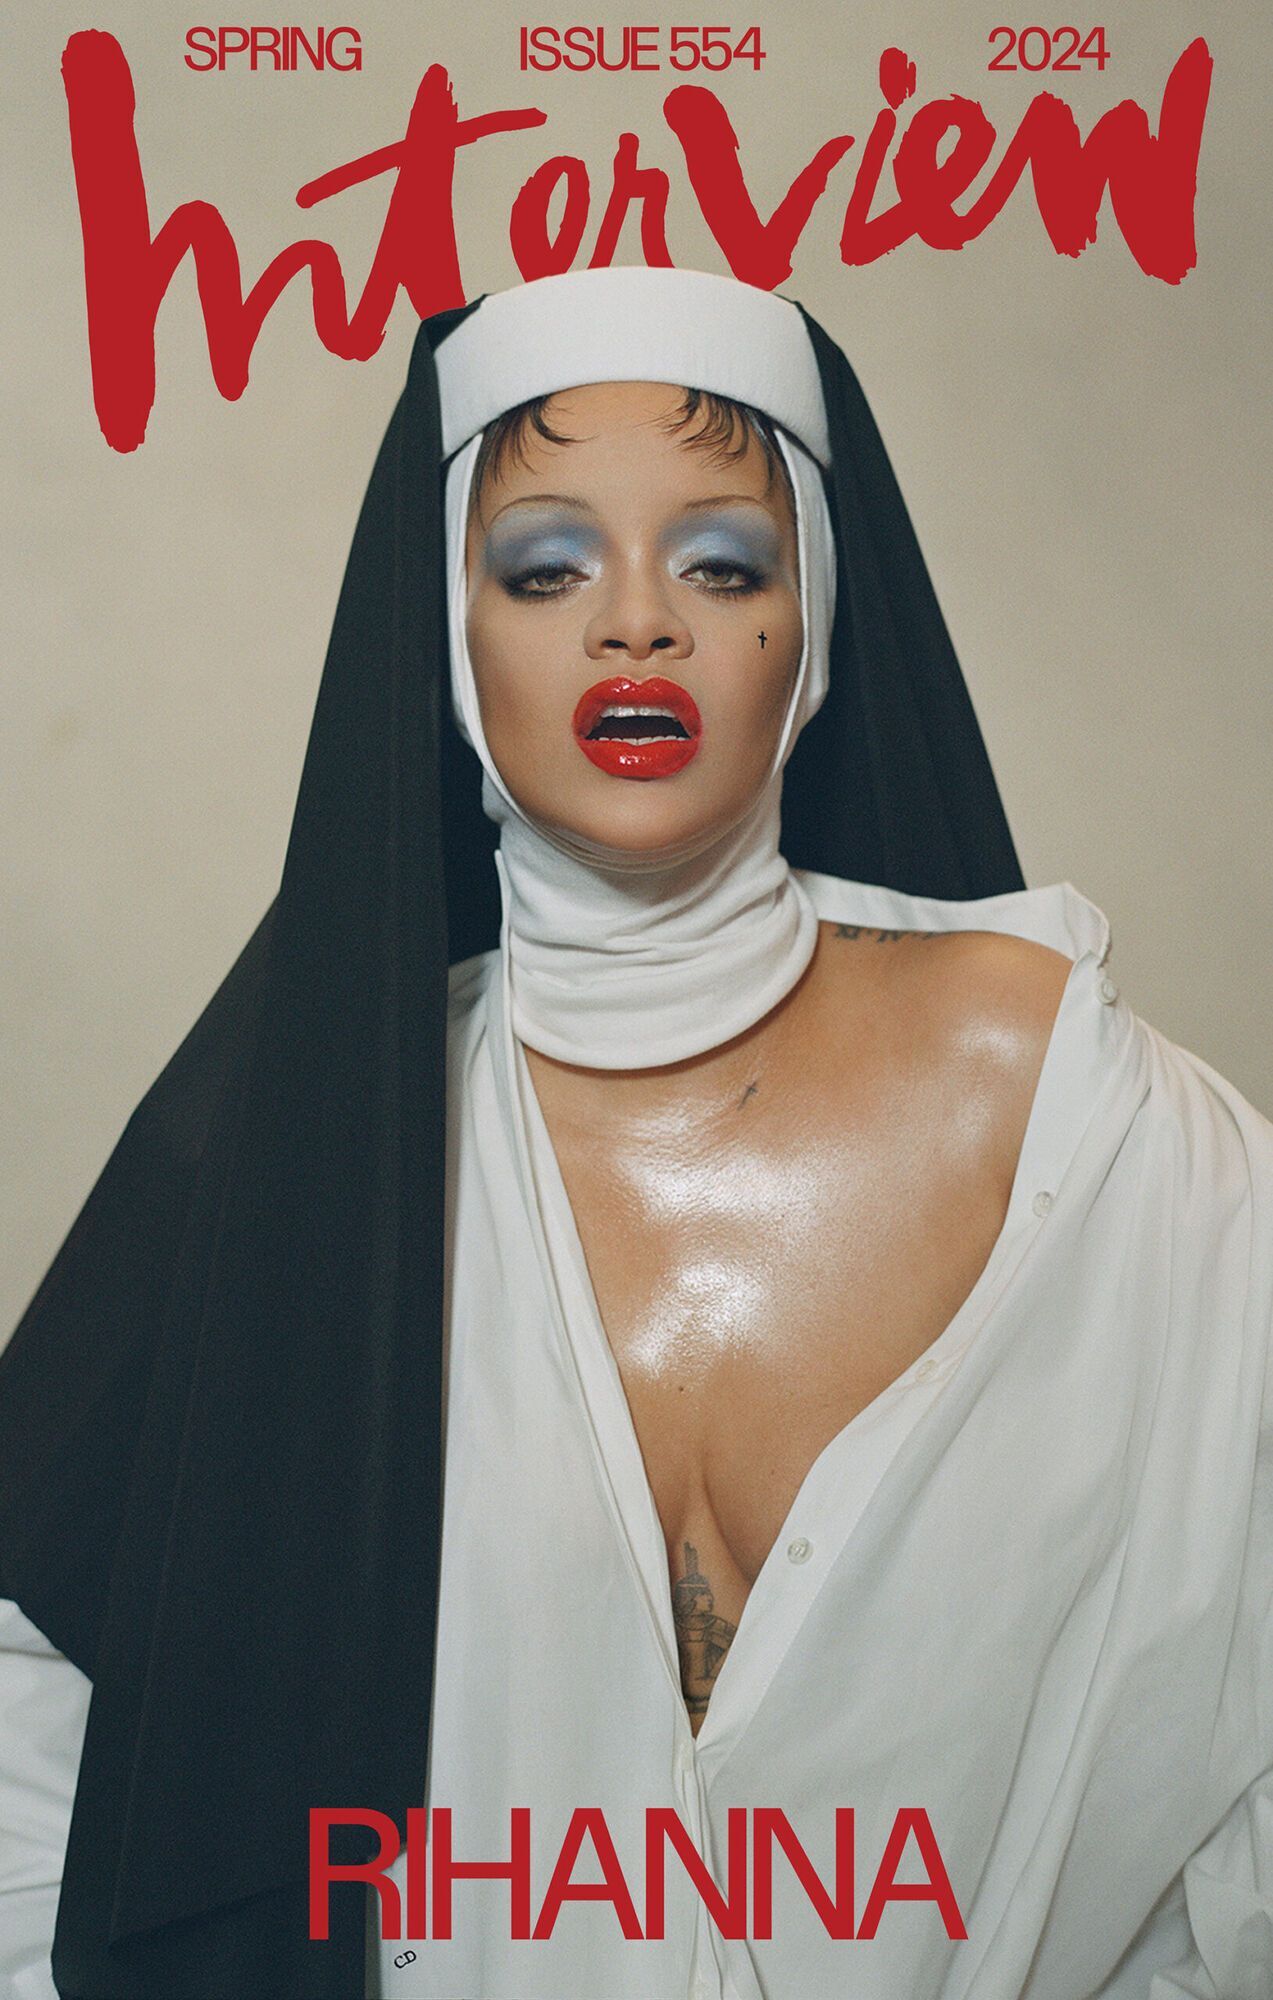 ''Po co kpić z religii?'' Rihanna została skrytykowana za swój szczery wizerunek zakonnicy